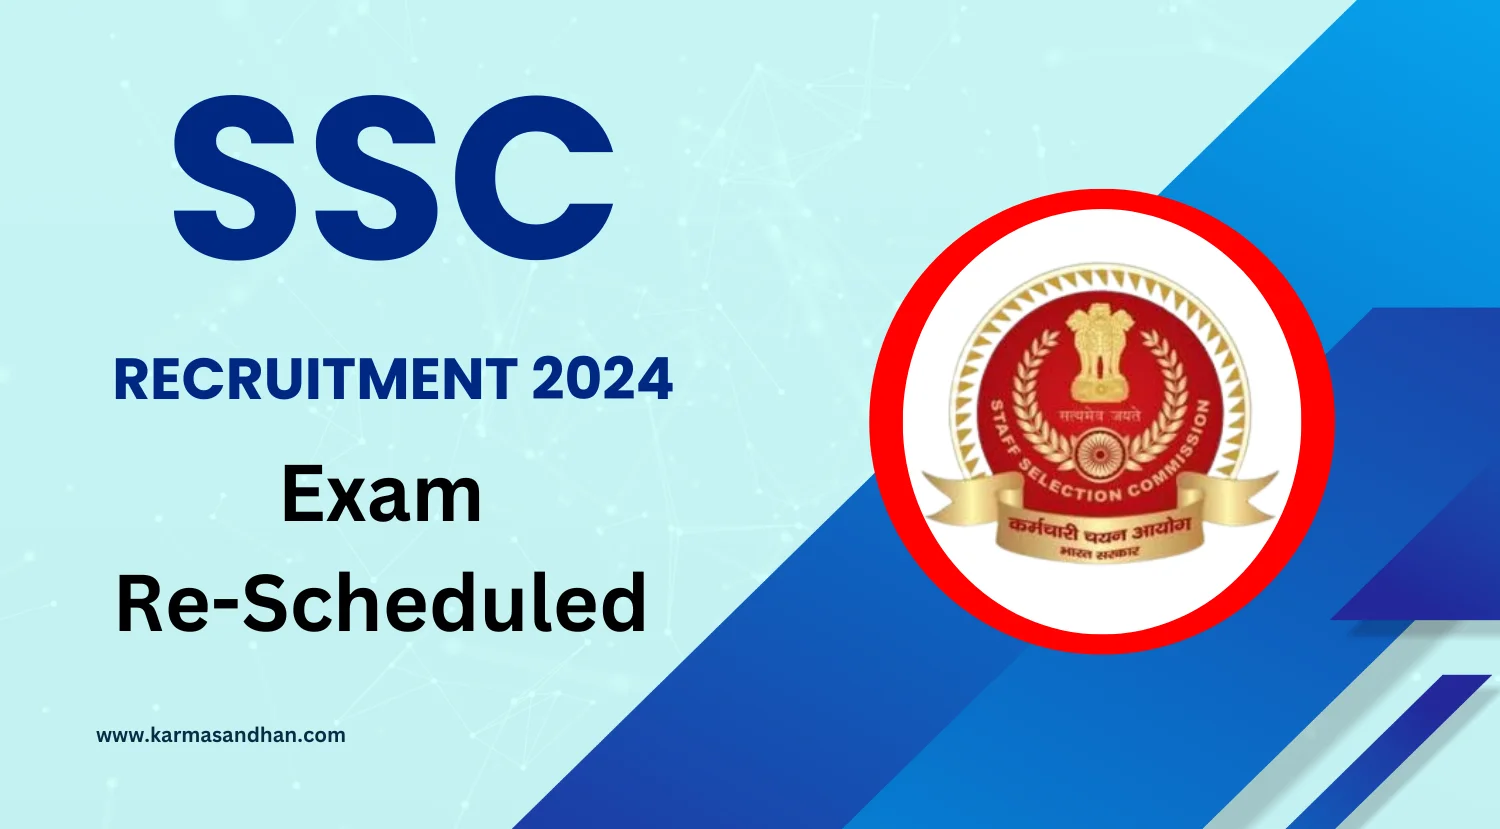 SSC Recruitment 2024 Exam Date announced